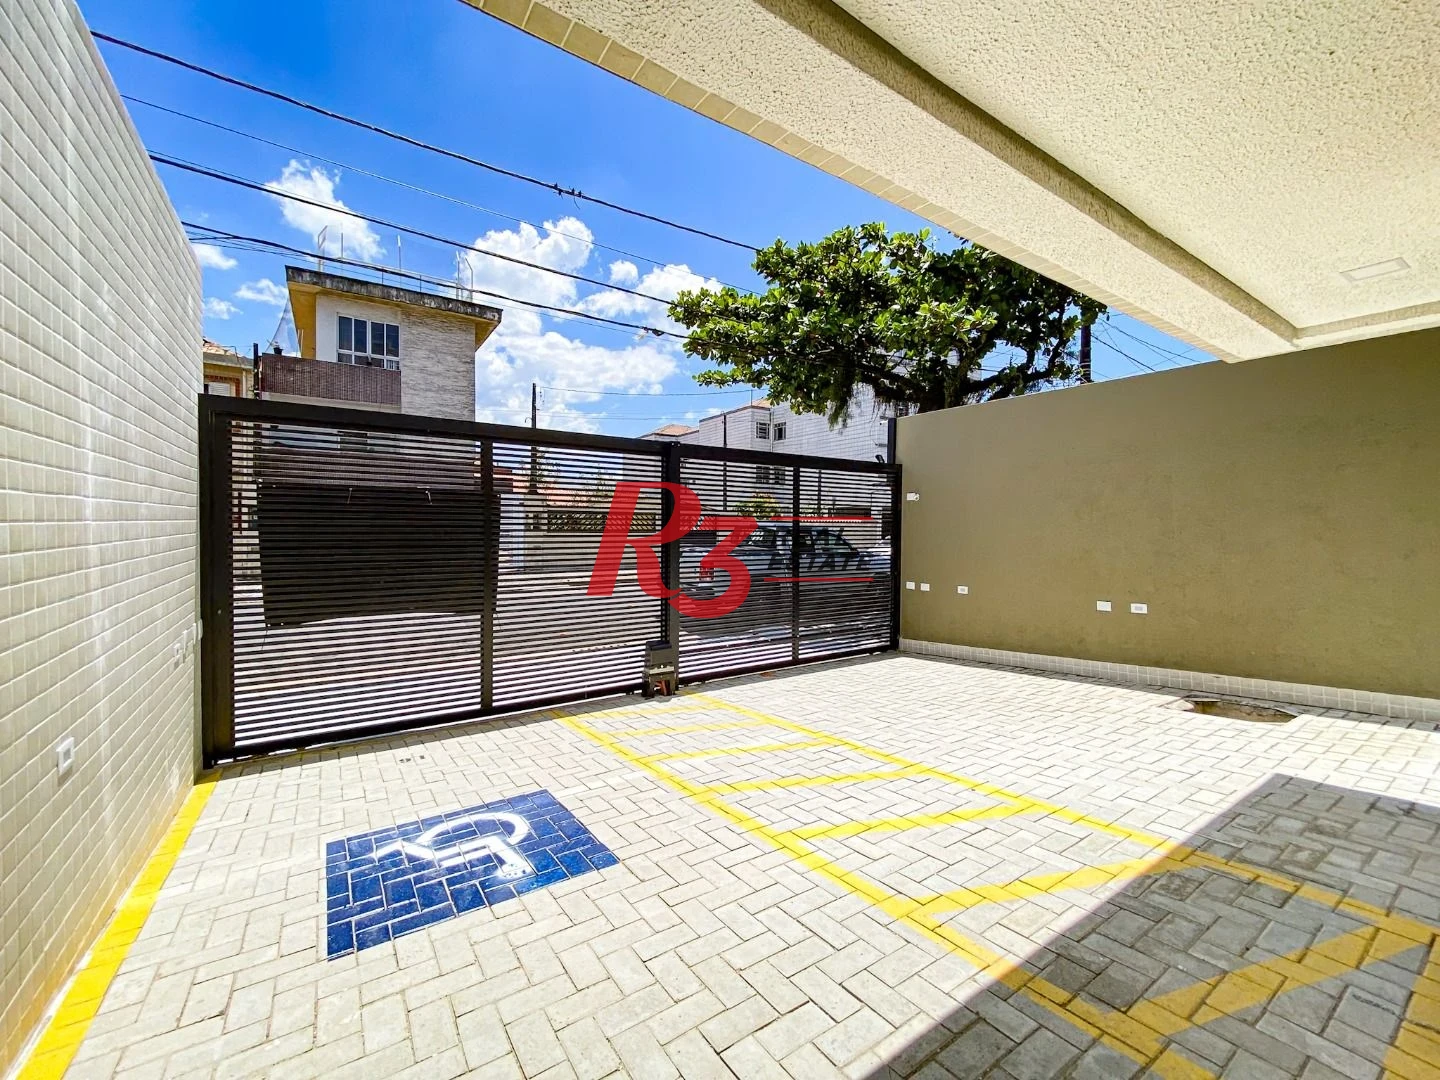 Apartamento com 1 dormitório à venda, 41 m² por R$ 350.000,00 - Aparecida - Santos/SP